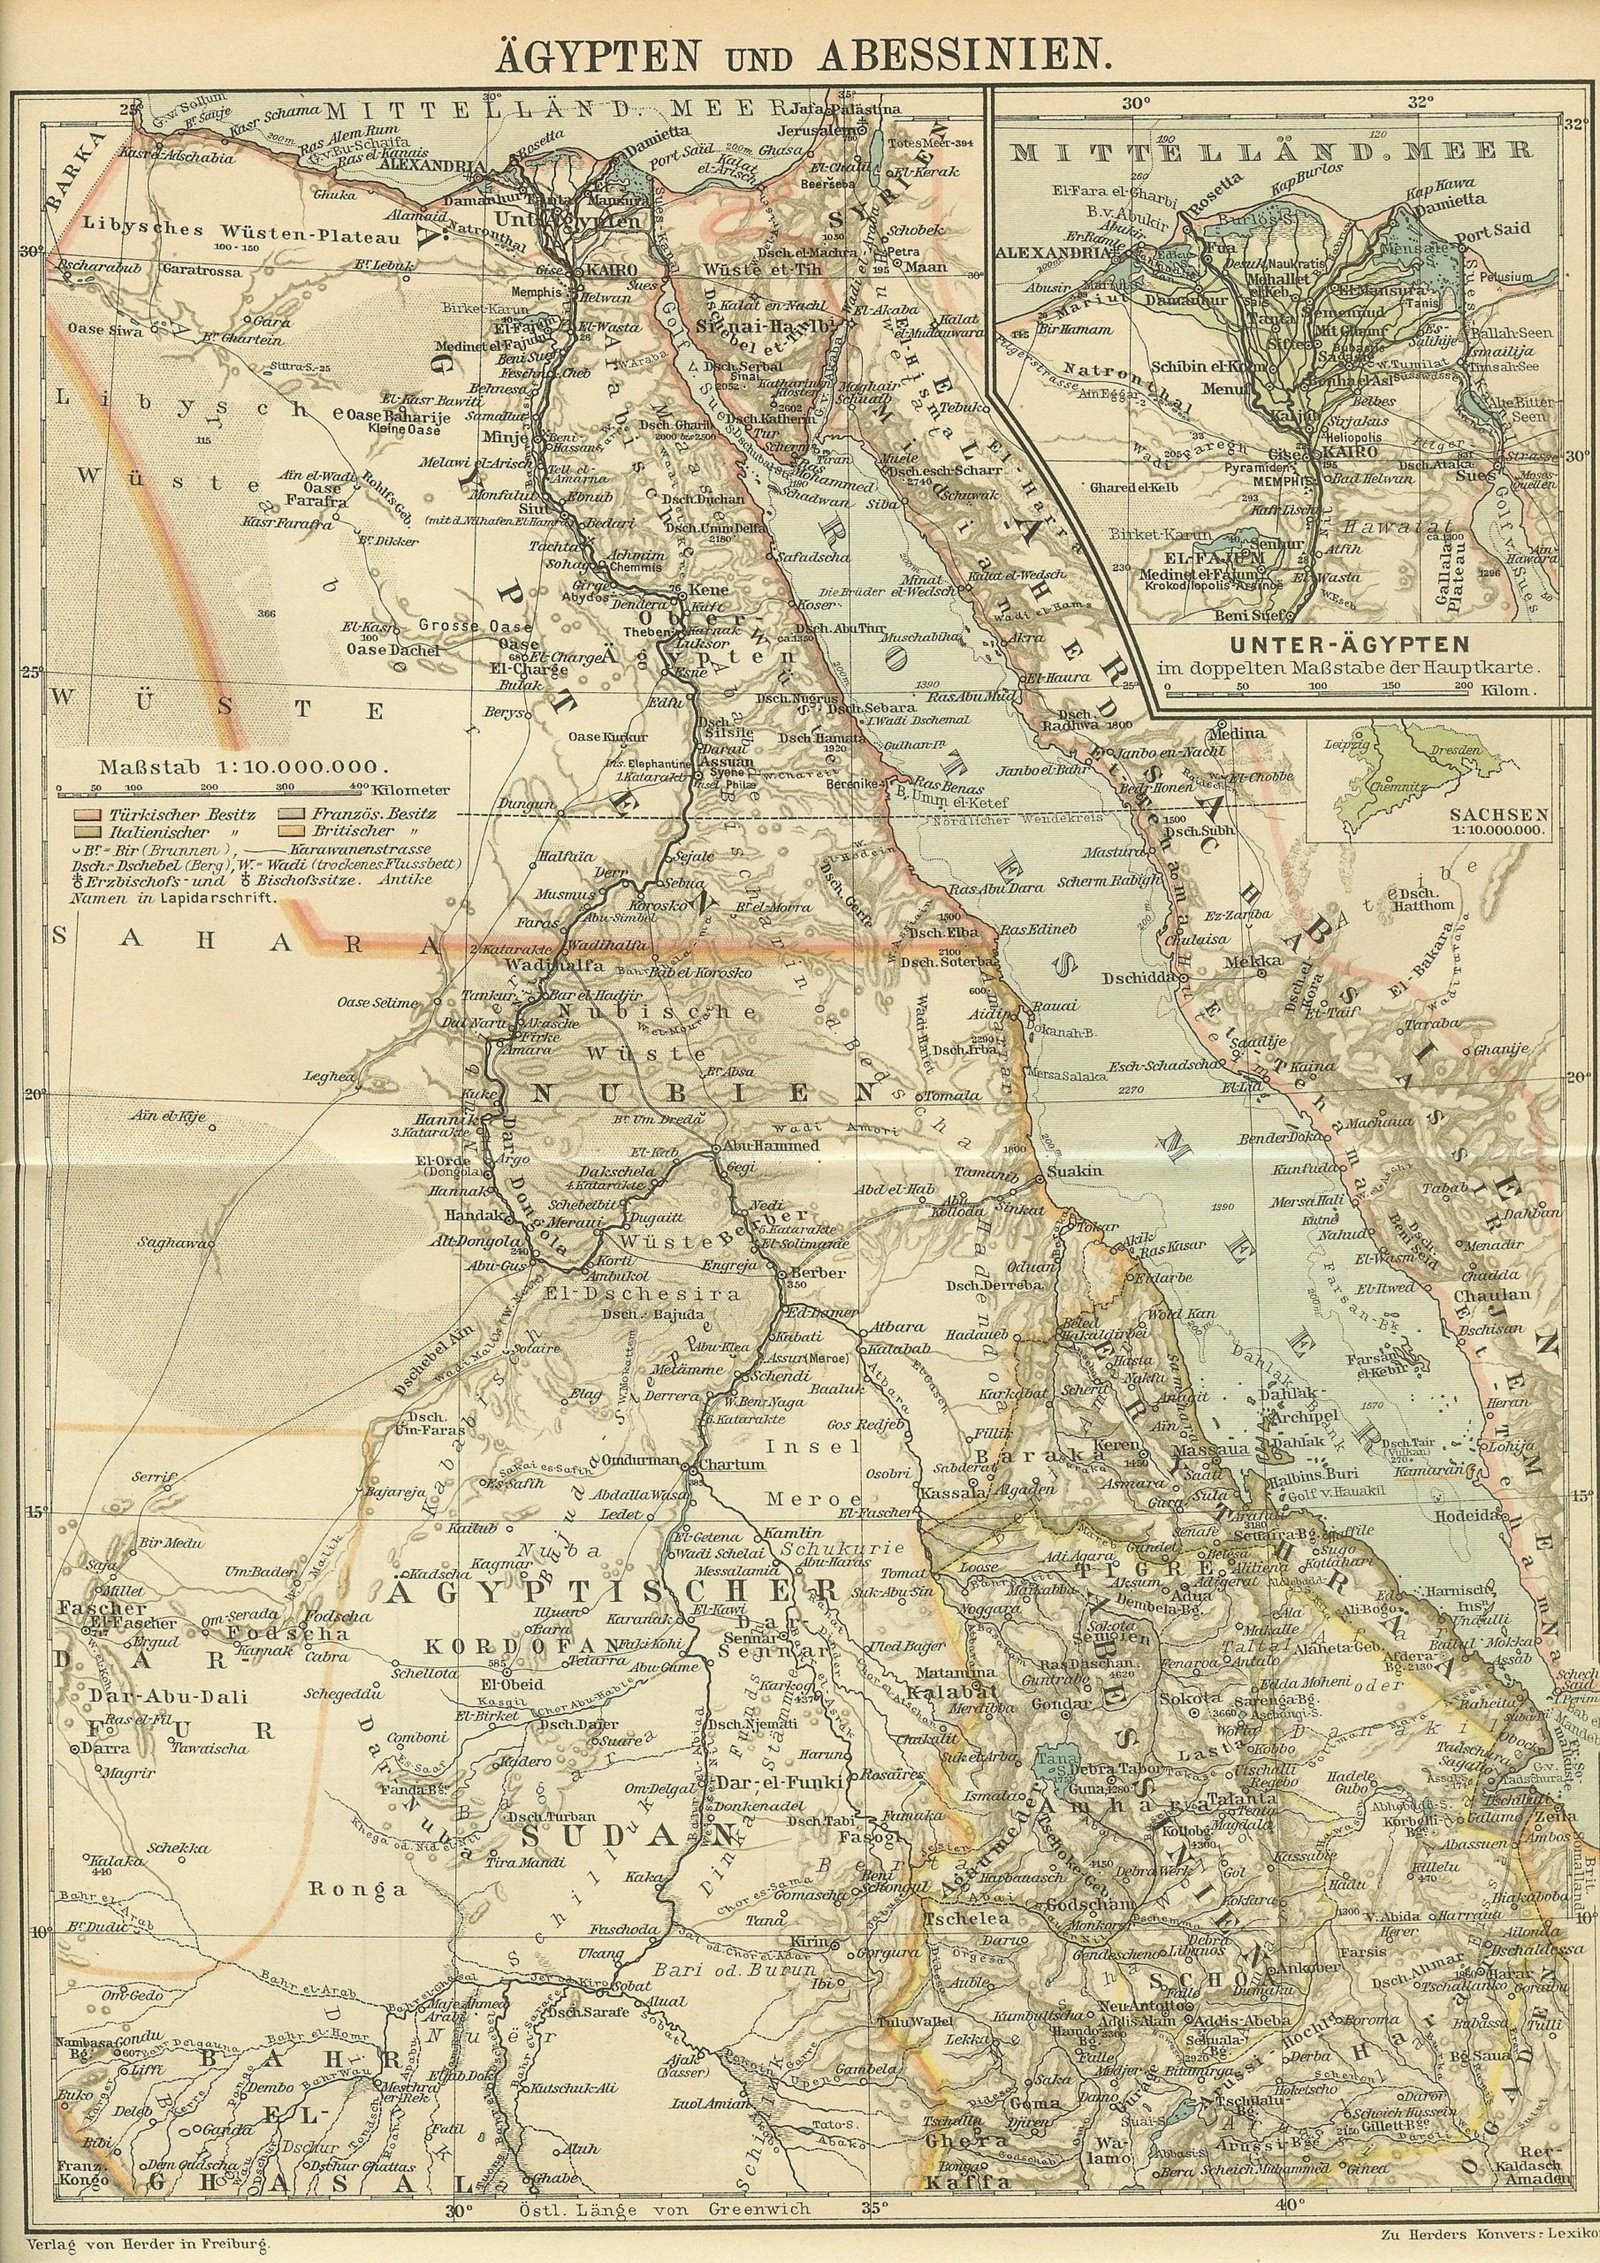 Egipto, Sudán y Abisinia, 1902